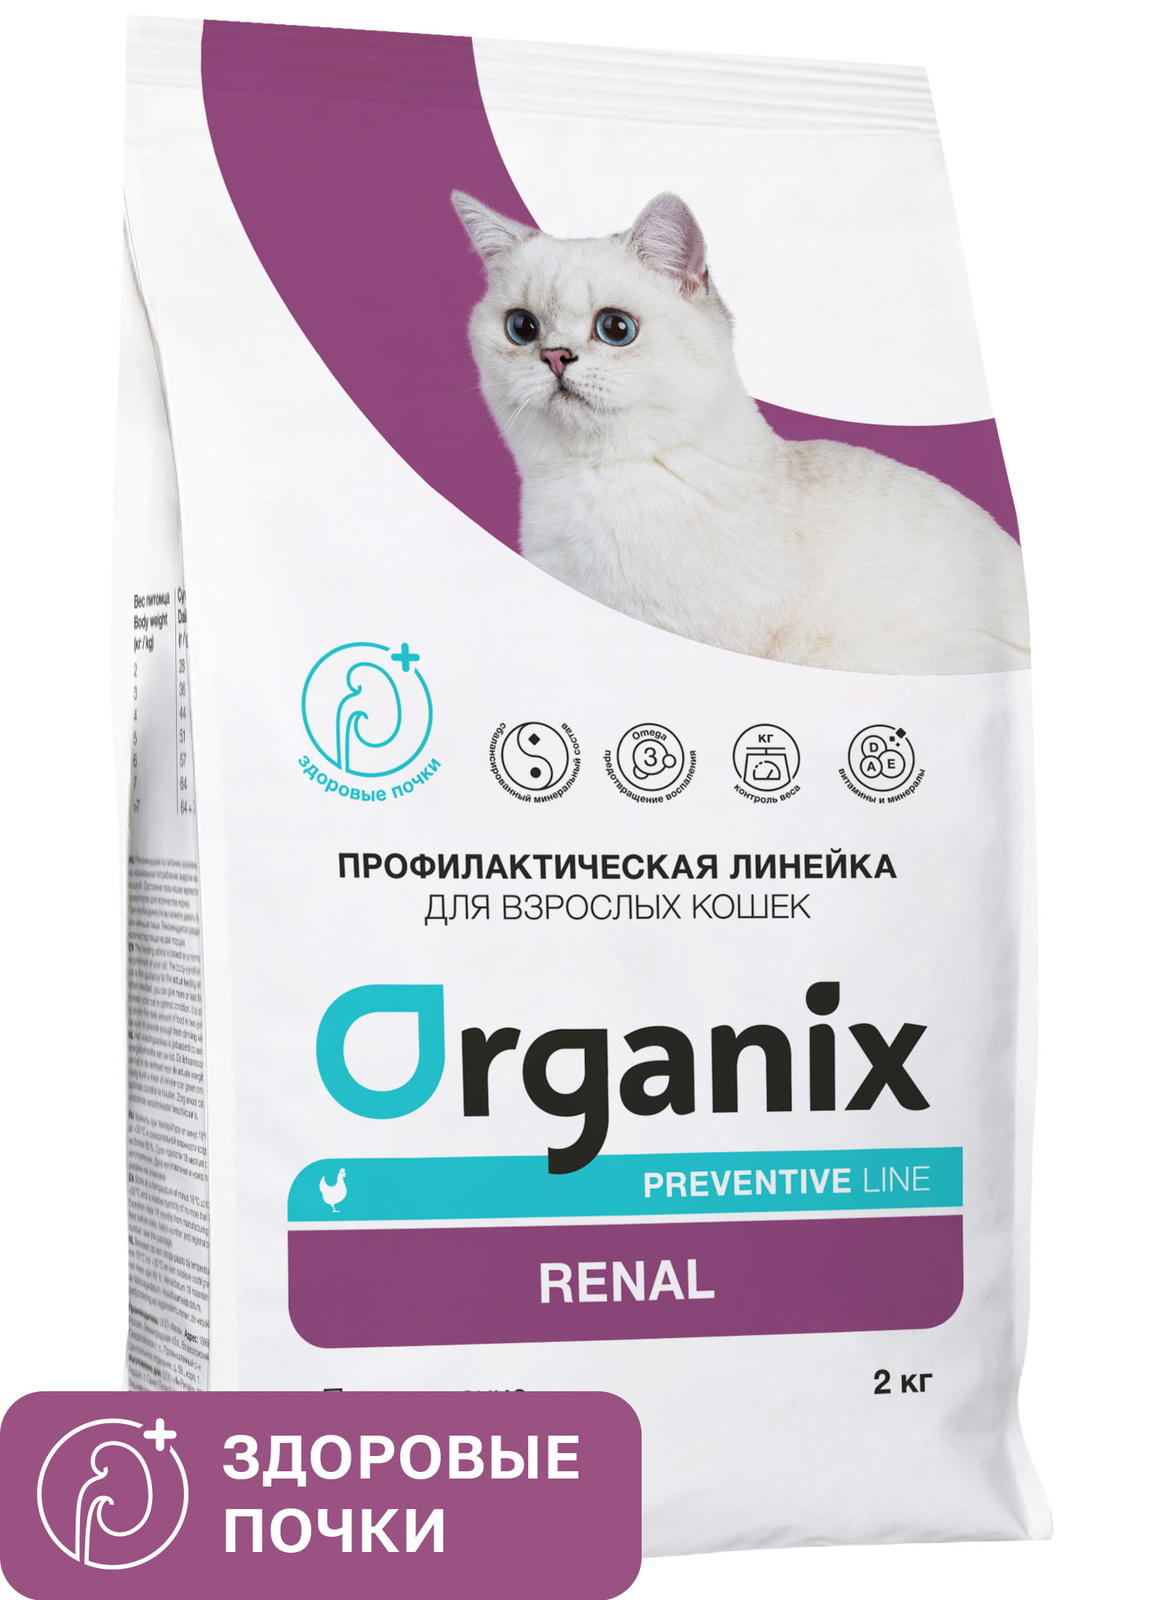 Organix Preventive Line Organix Preventive Line renal сухой корм для кошек Поддержание здоровья почек (600 г)